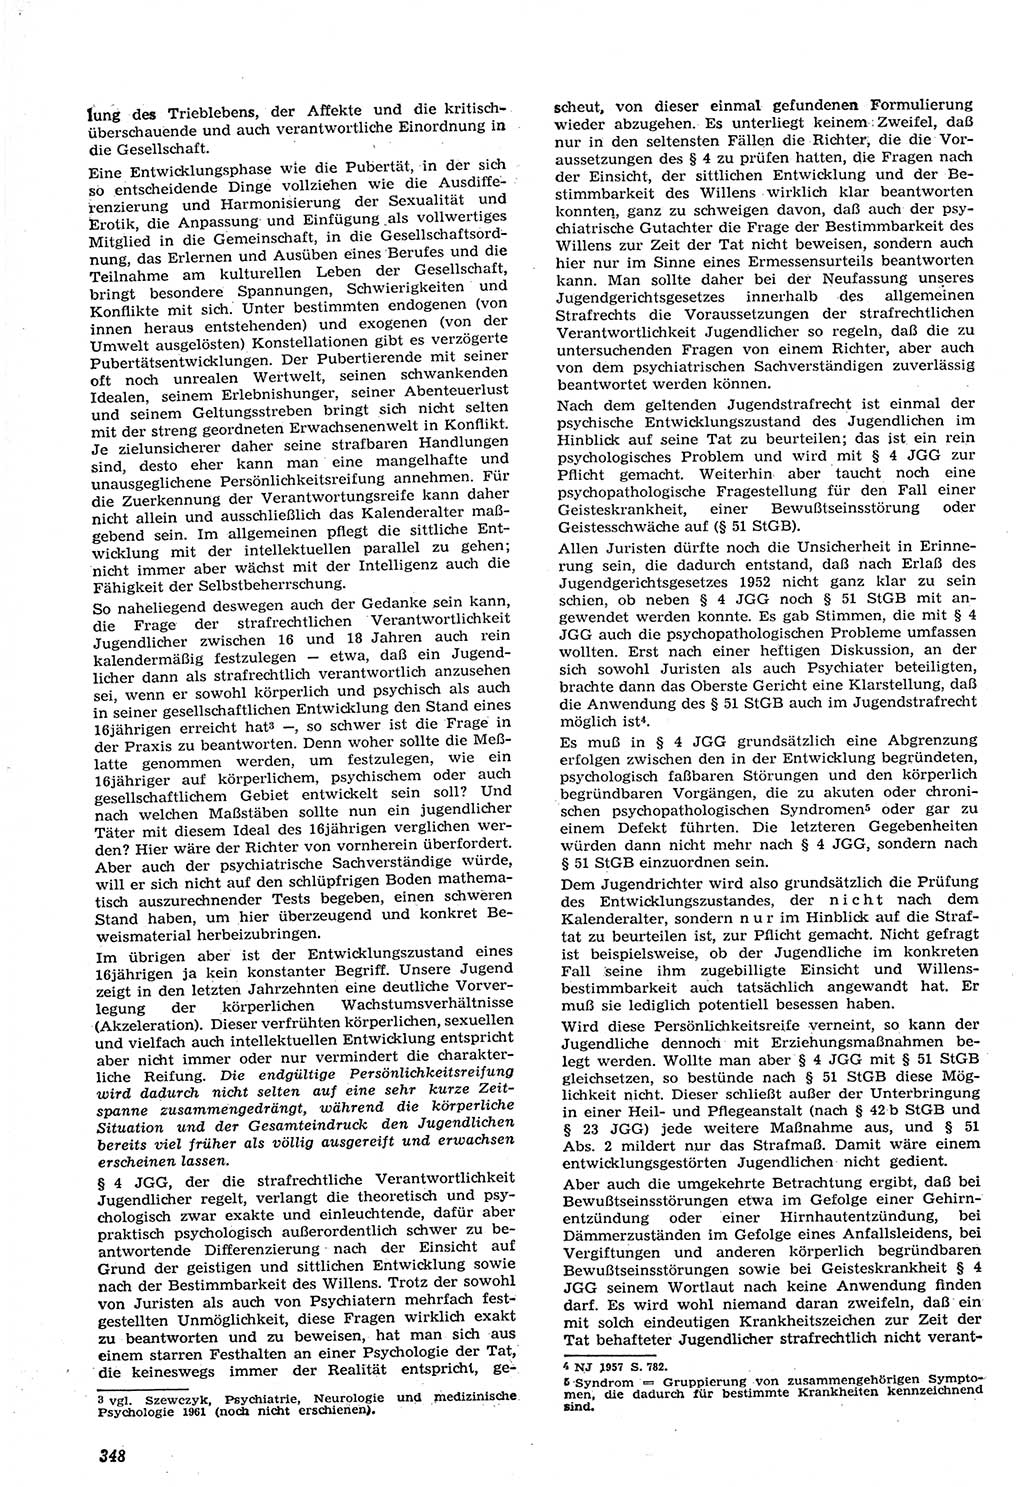 Neue Justiz (NJ), Zeitschrift für Recht und Rechtswissenschaft [Deutsche Demokratische Republik (DDR)], 15. Jahrgang 1961, Seite 348 (NJ DDR 1961, S. 348)